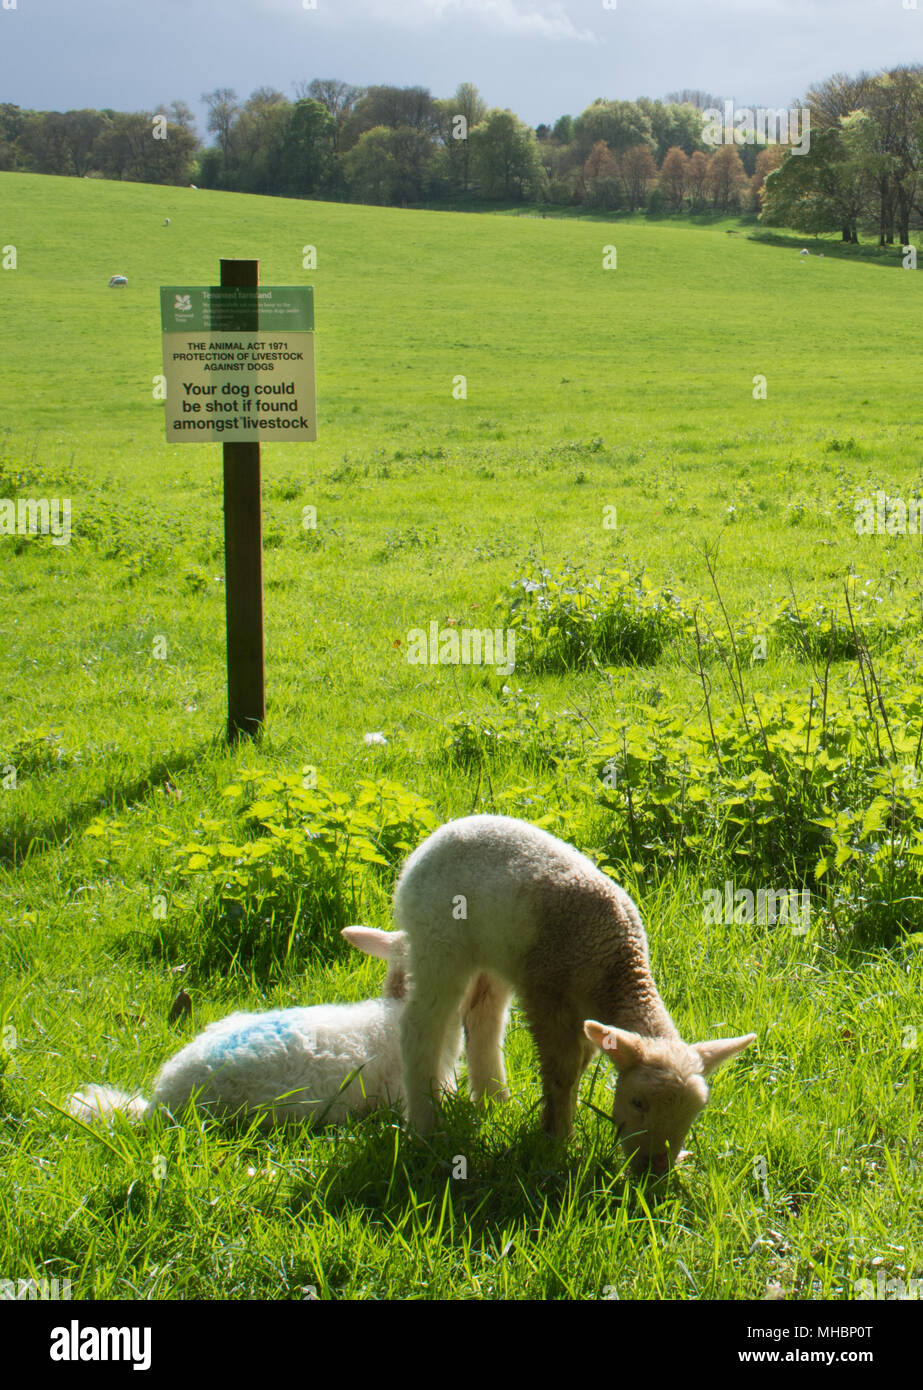 Sign in campo con due agnelli in attestante l'animale act 1971 protezione del bestiame contro i cani - il vostro cane potrebbe essere sparato se trovato tra il bestiame Foto Stock